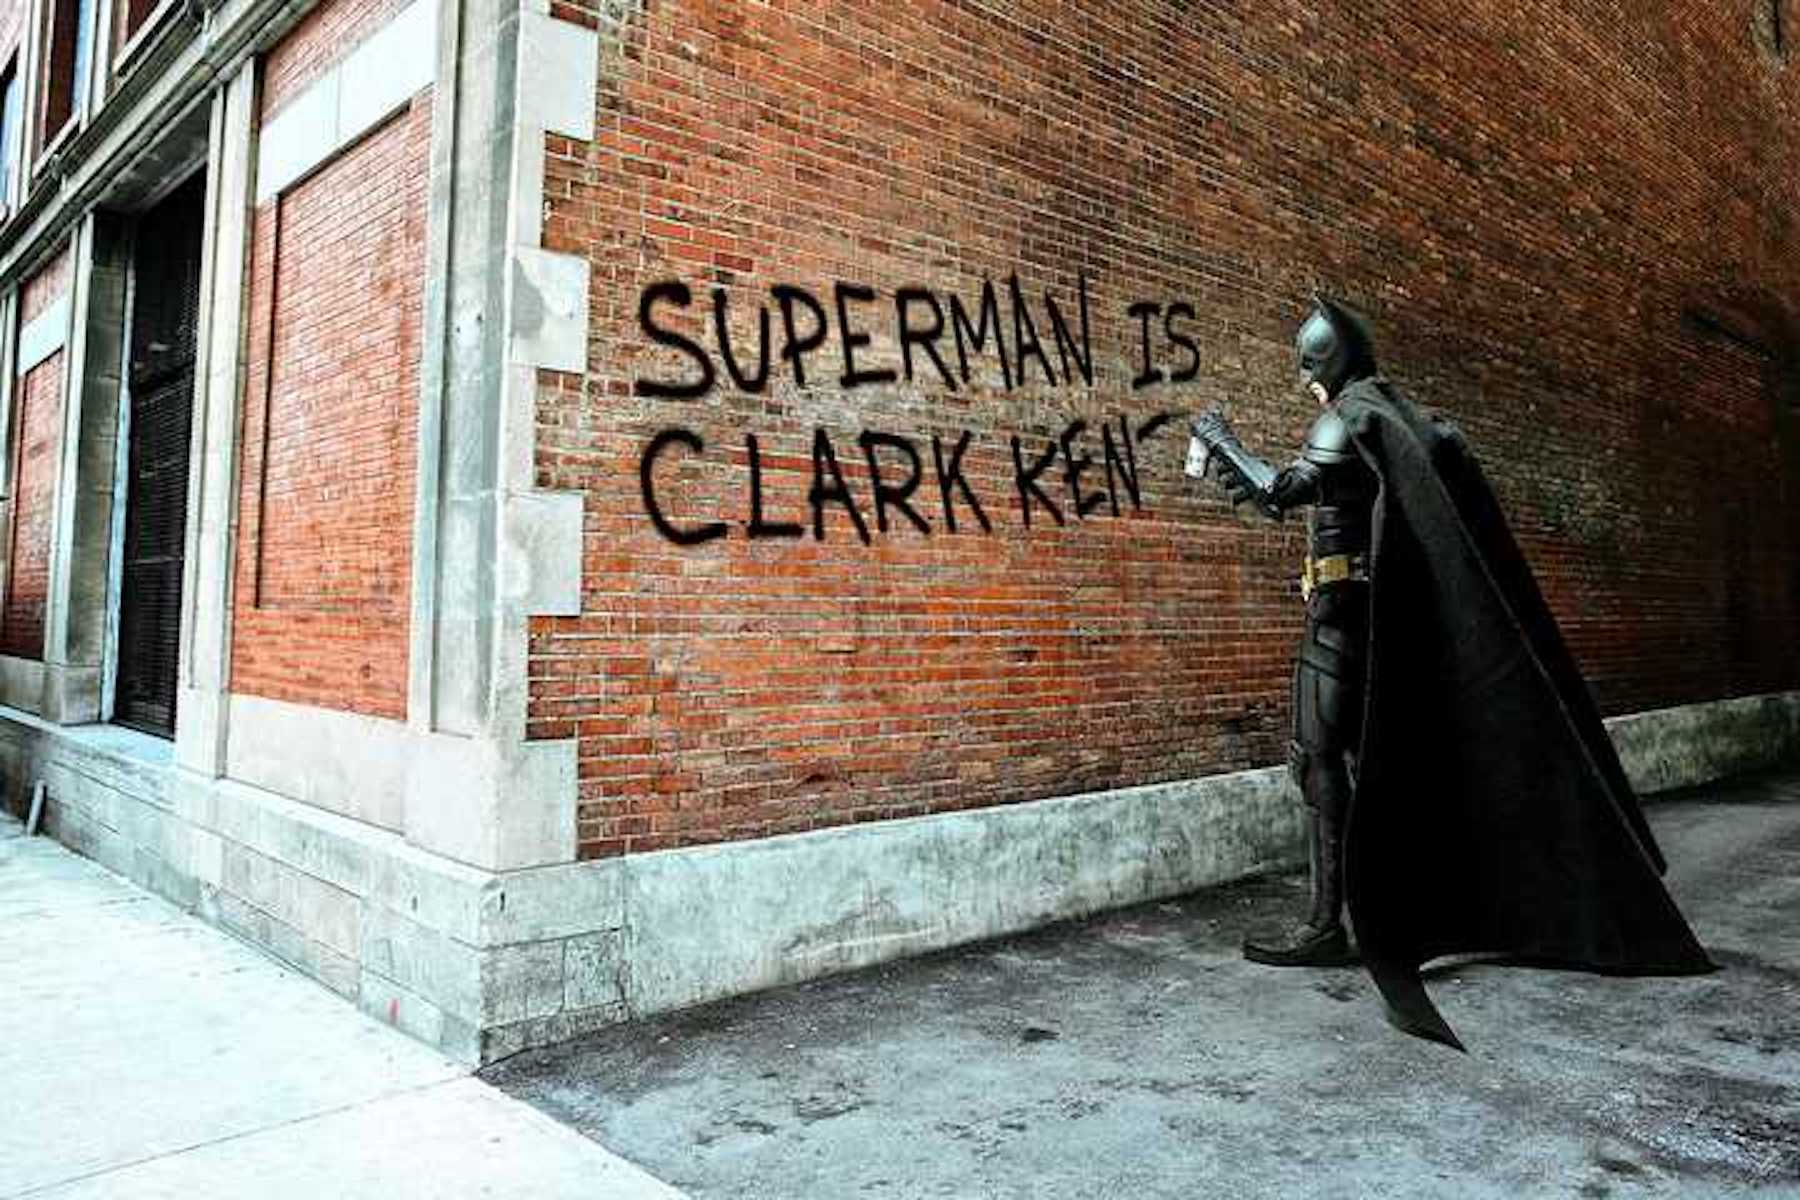     © Daniel Picard, Clark Kent Graffiti, 2017

